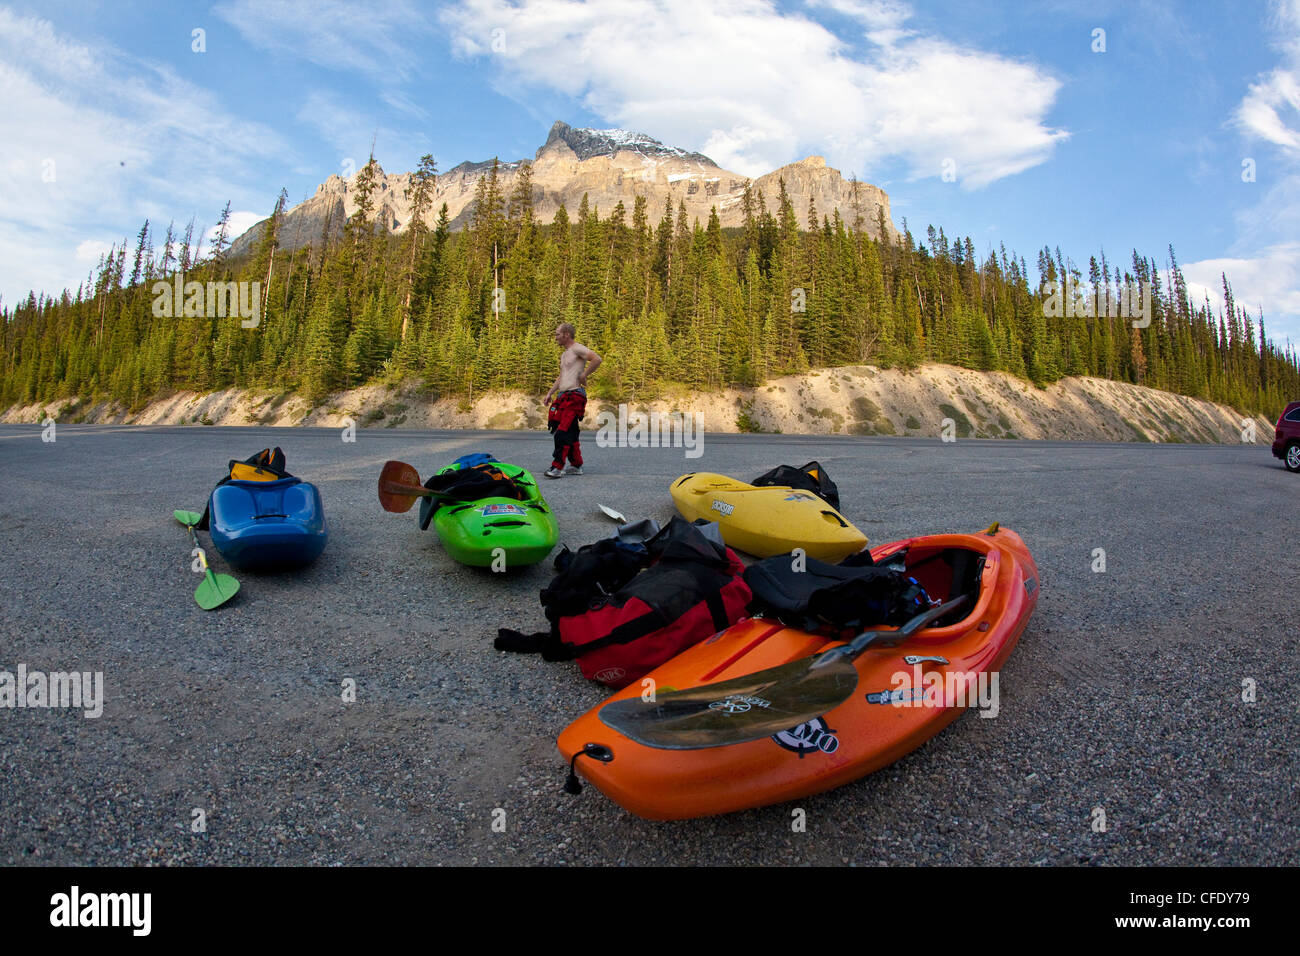 Un homme attend une navette après le kayak de rivière Mystia, Banff National Park, Alberta, Canada Banque D'Images